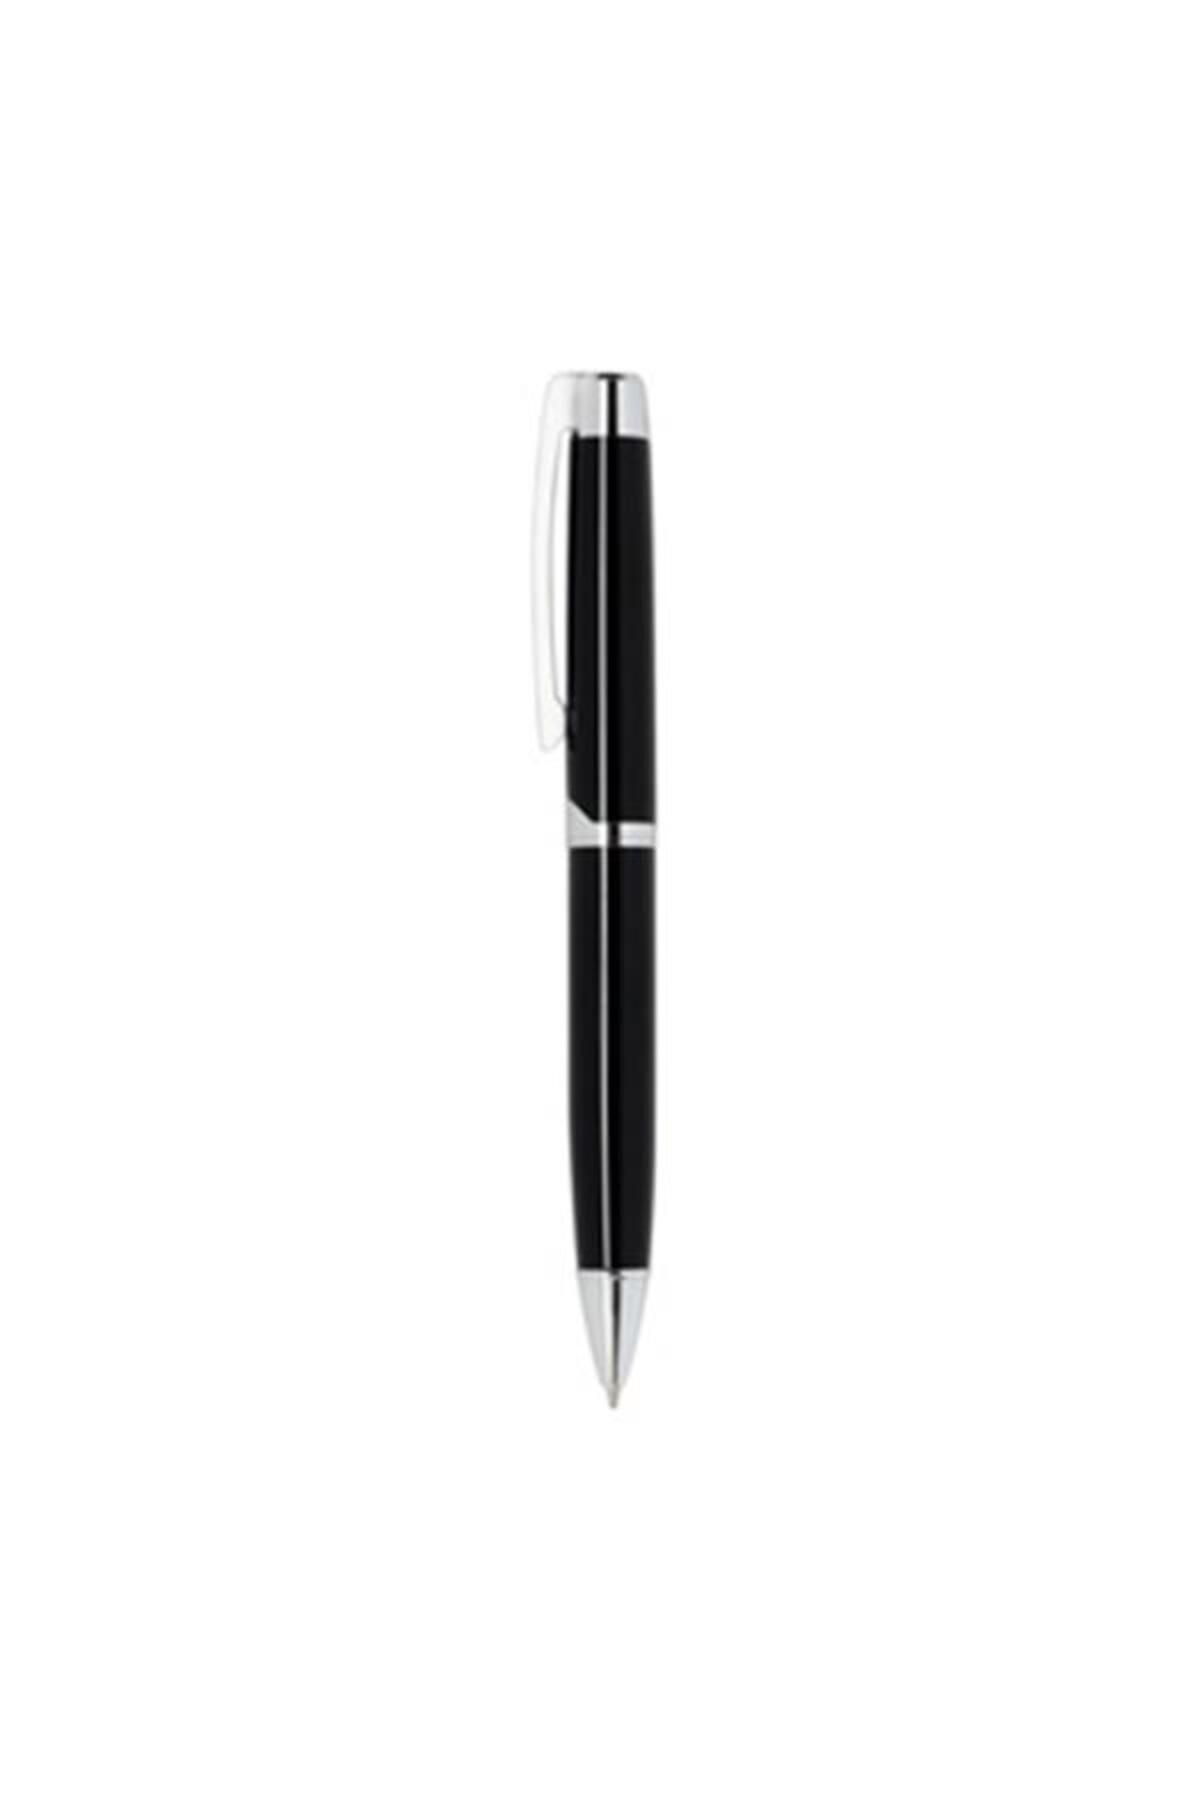 Zippo Kalem 41117 Glossy Blk Ballpoınt Pen